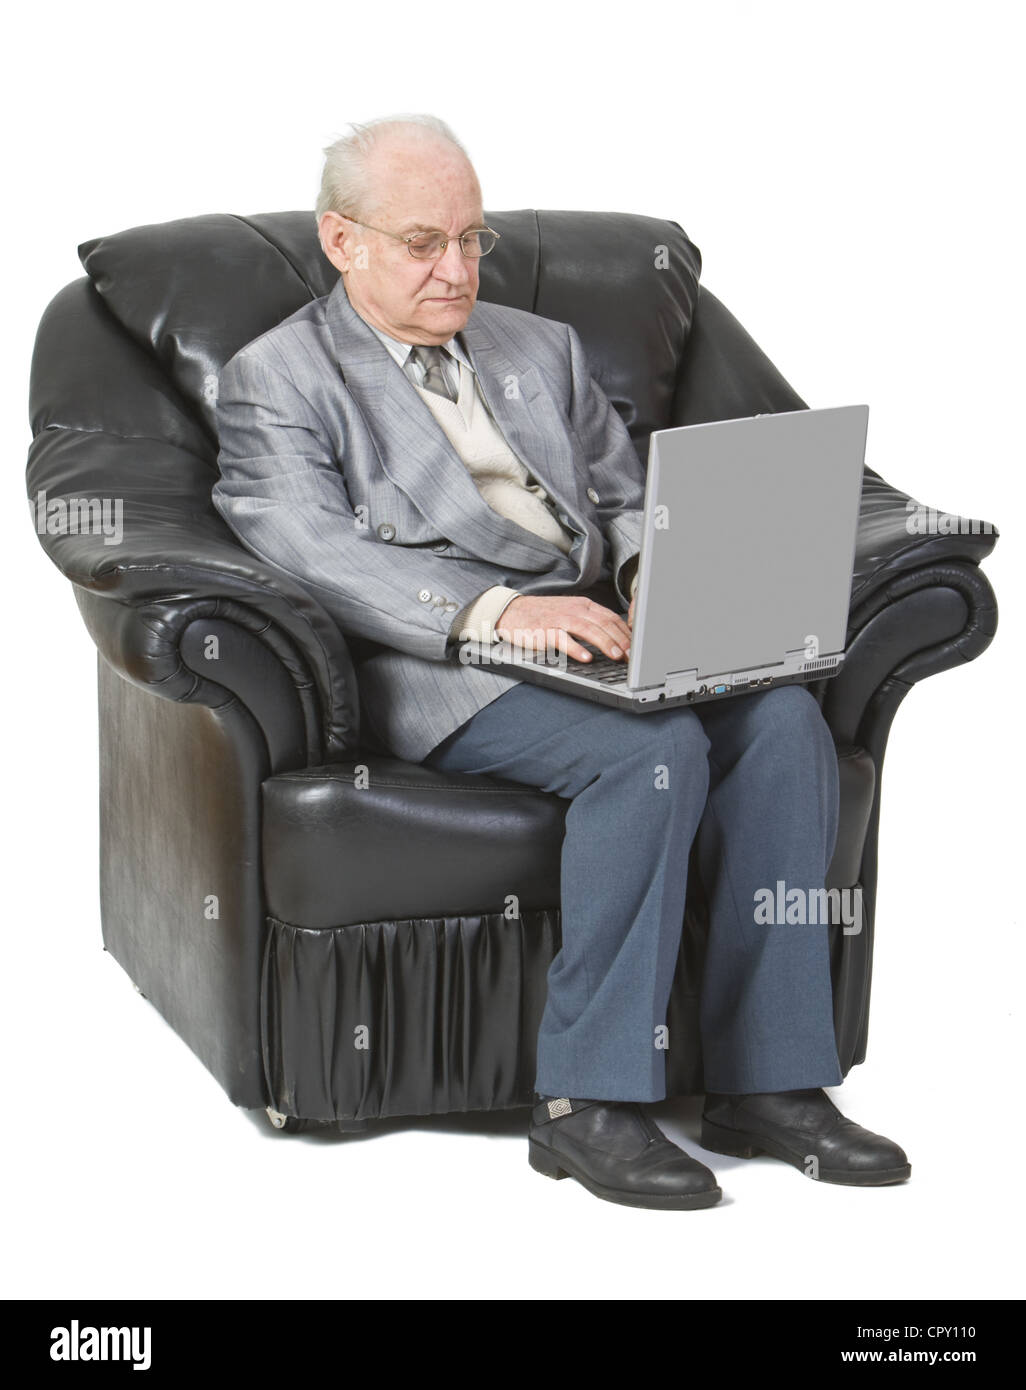 Bild von einem älteren Mann Standortwahl in einen Sessel und einen Laptop, isoliert auf einem weißen Hintergrund verwenden. Stockfoto